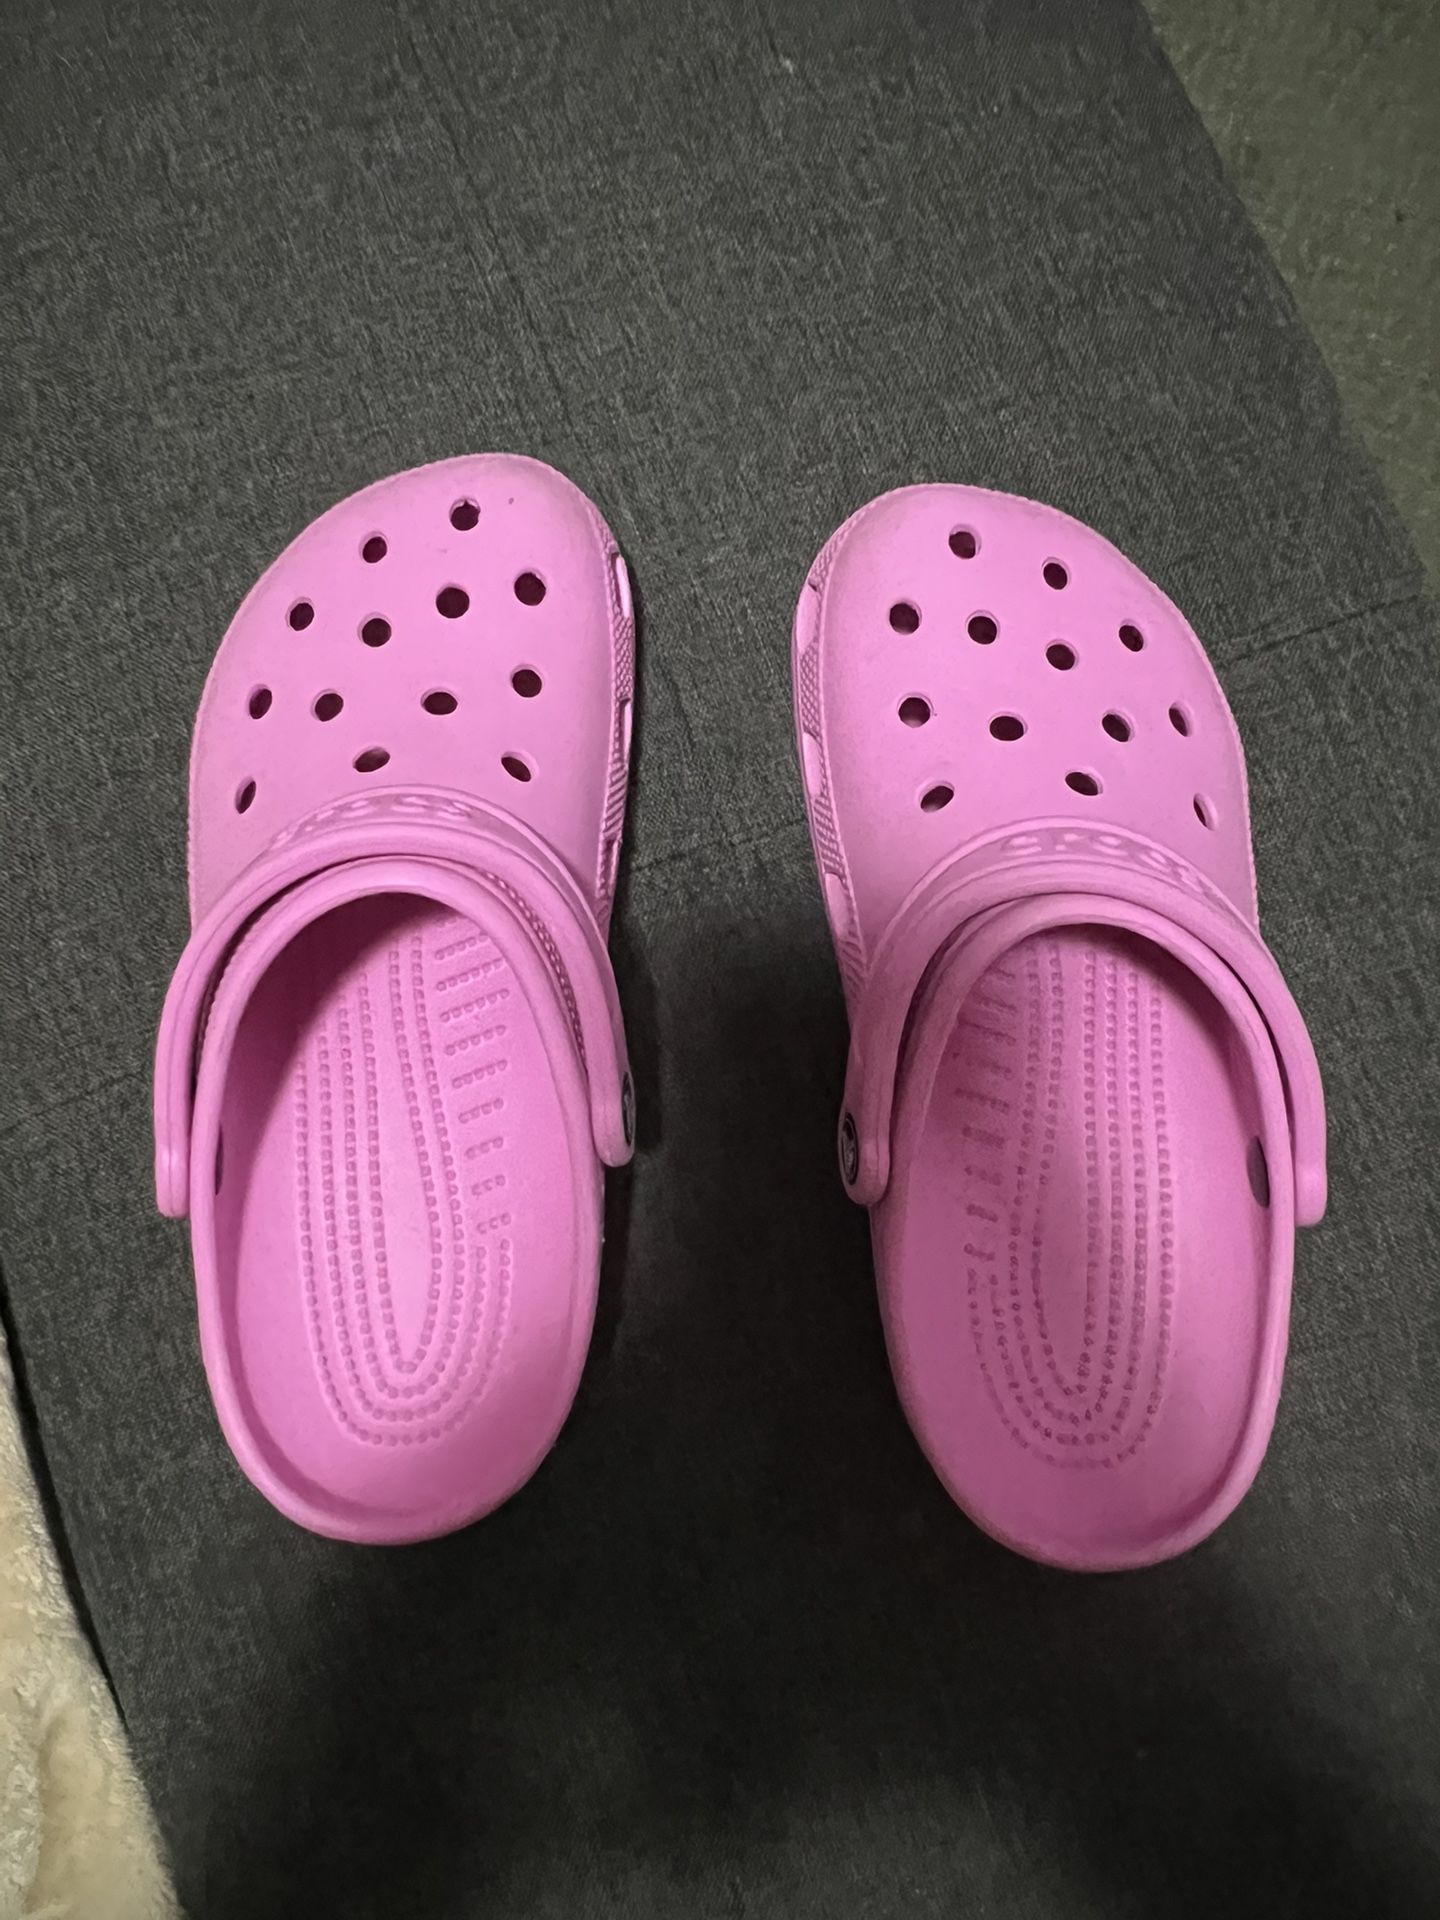 Women’s Crocs